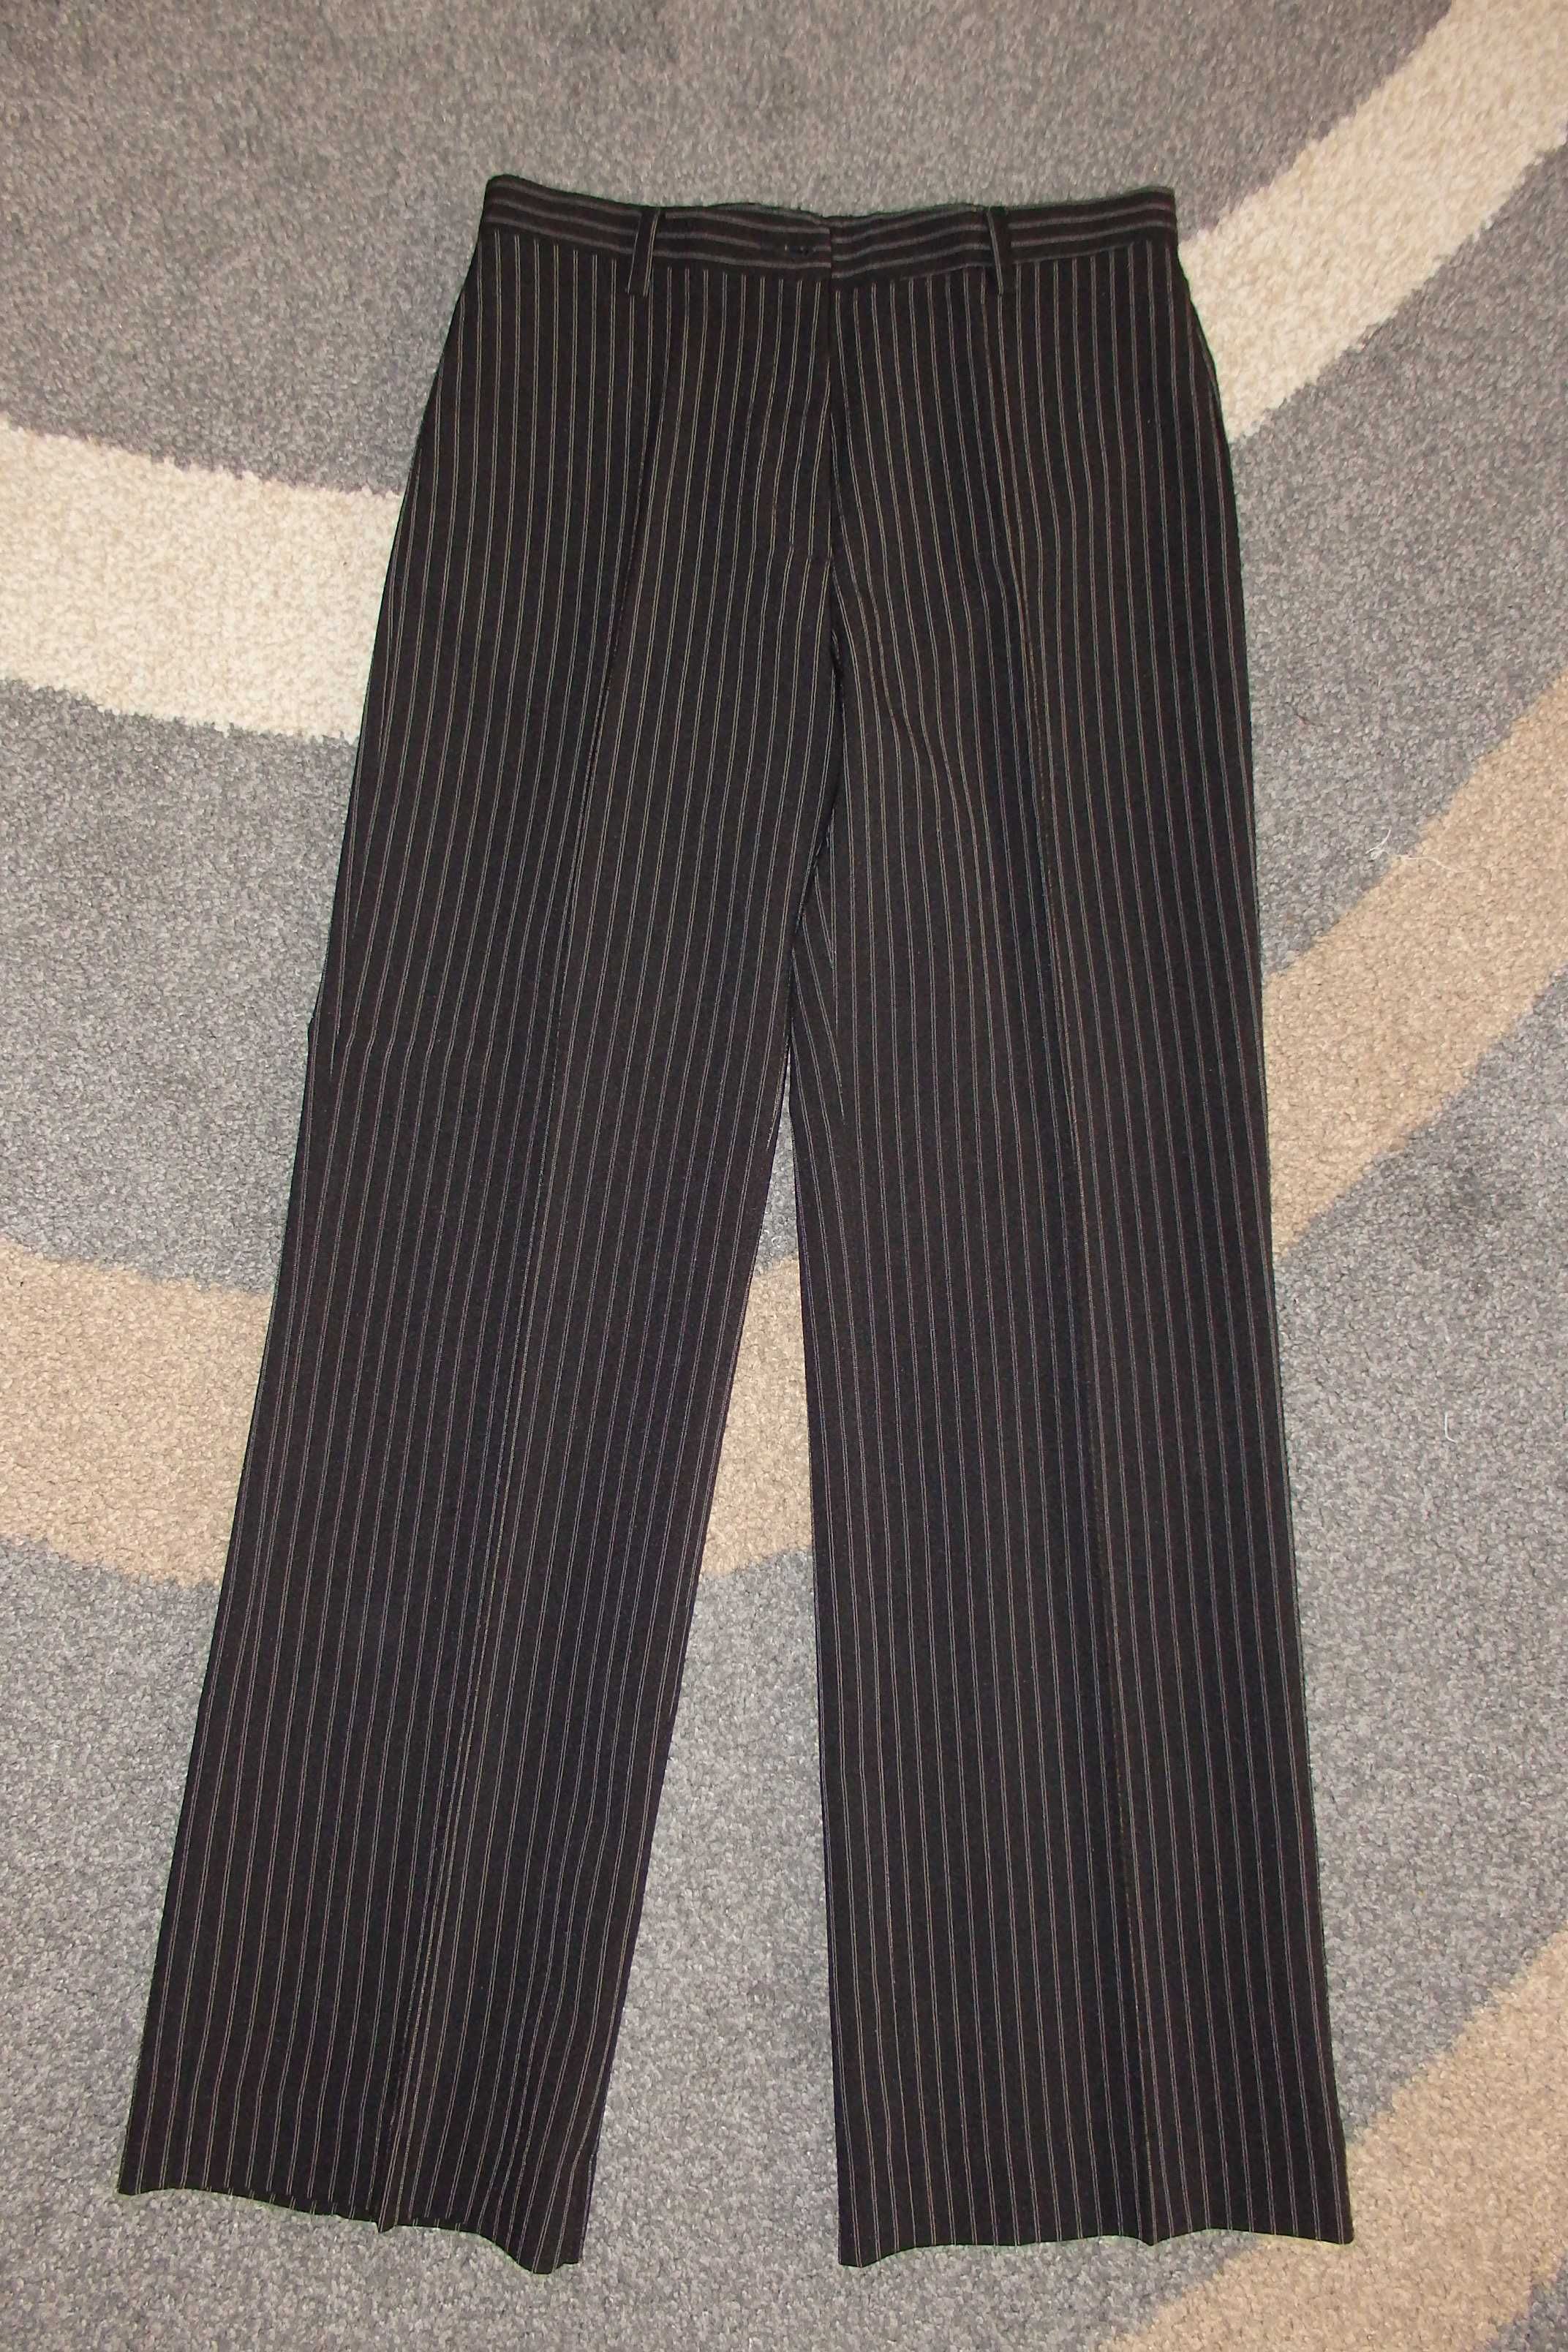 Eleganckie damskie spodnie w kant czarne w drobne prążki M/L 38/40